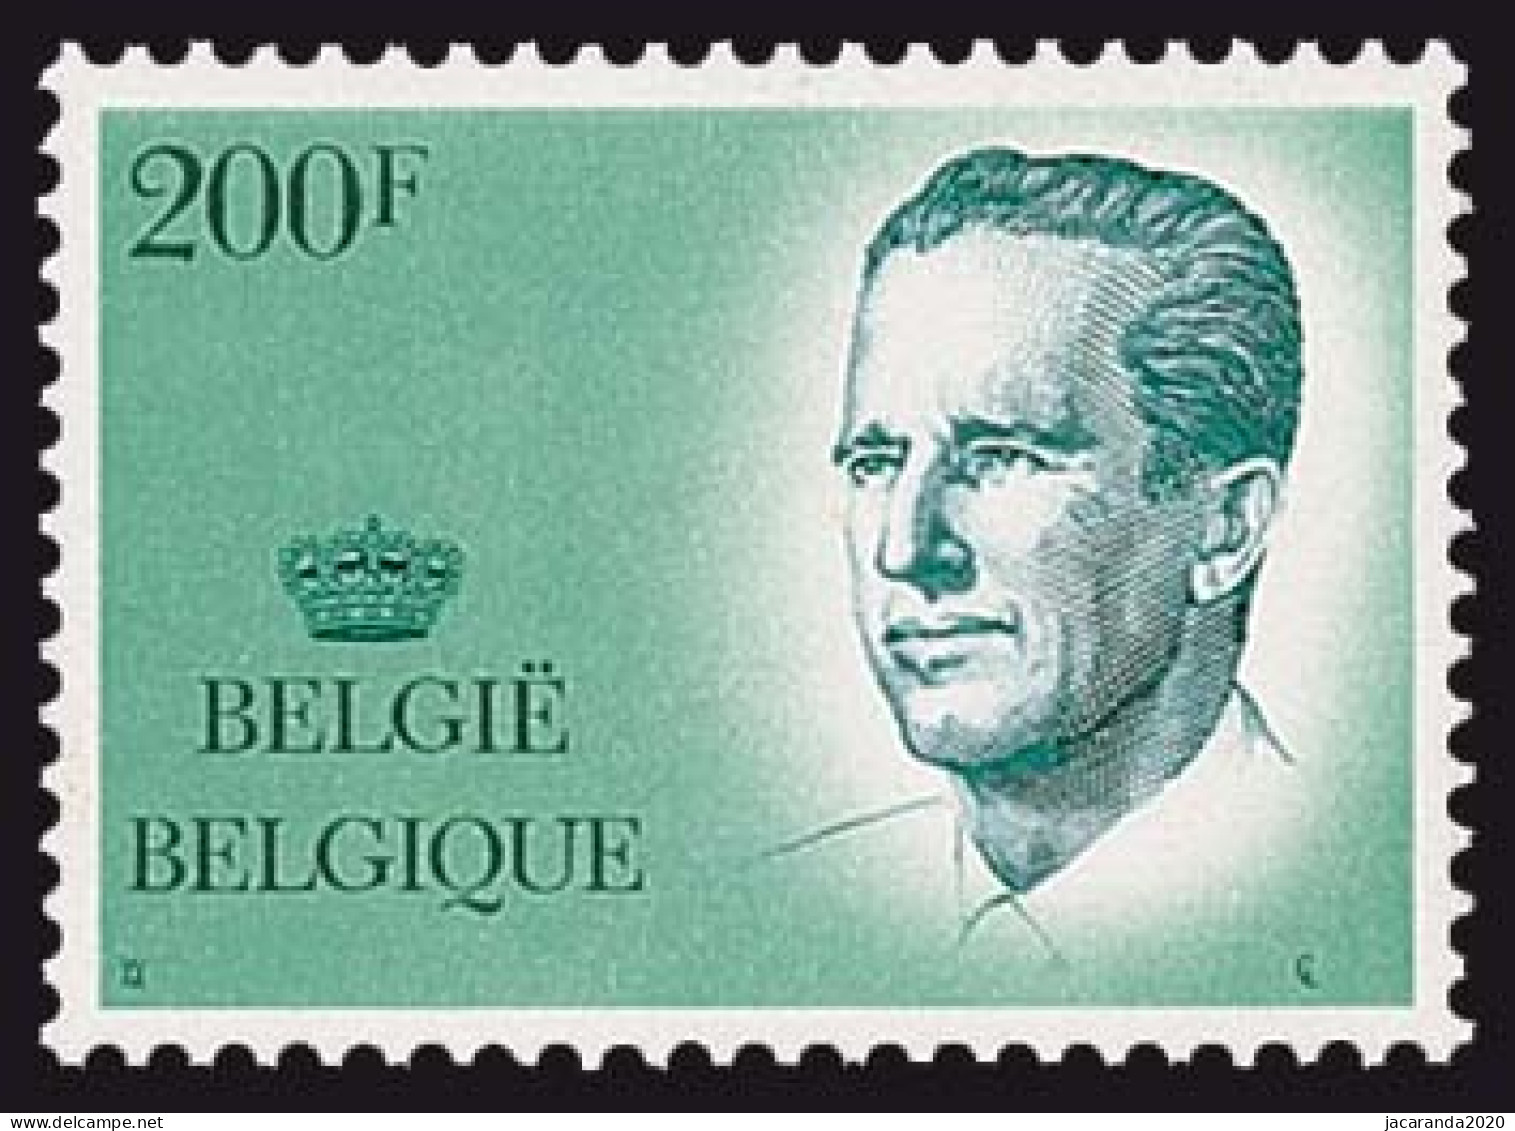 België 2236 - Koning Boudewijn - Roi Baudouin - Ongebruikt